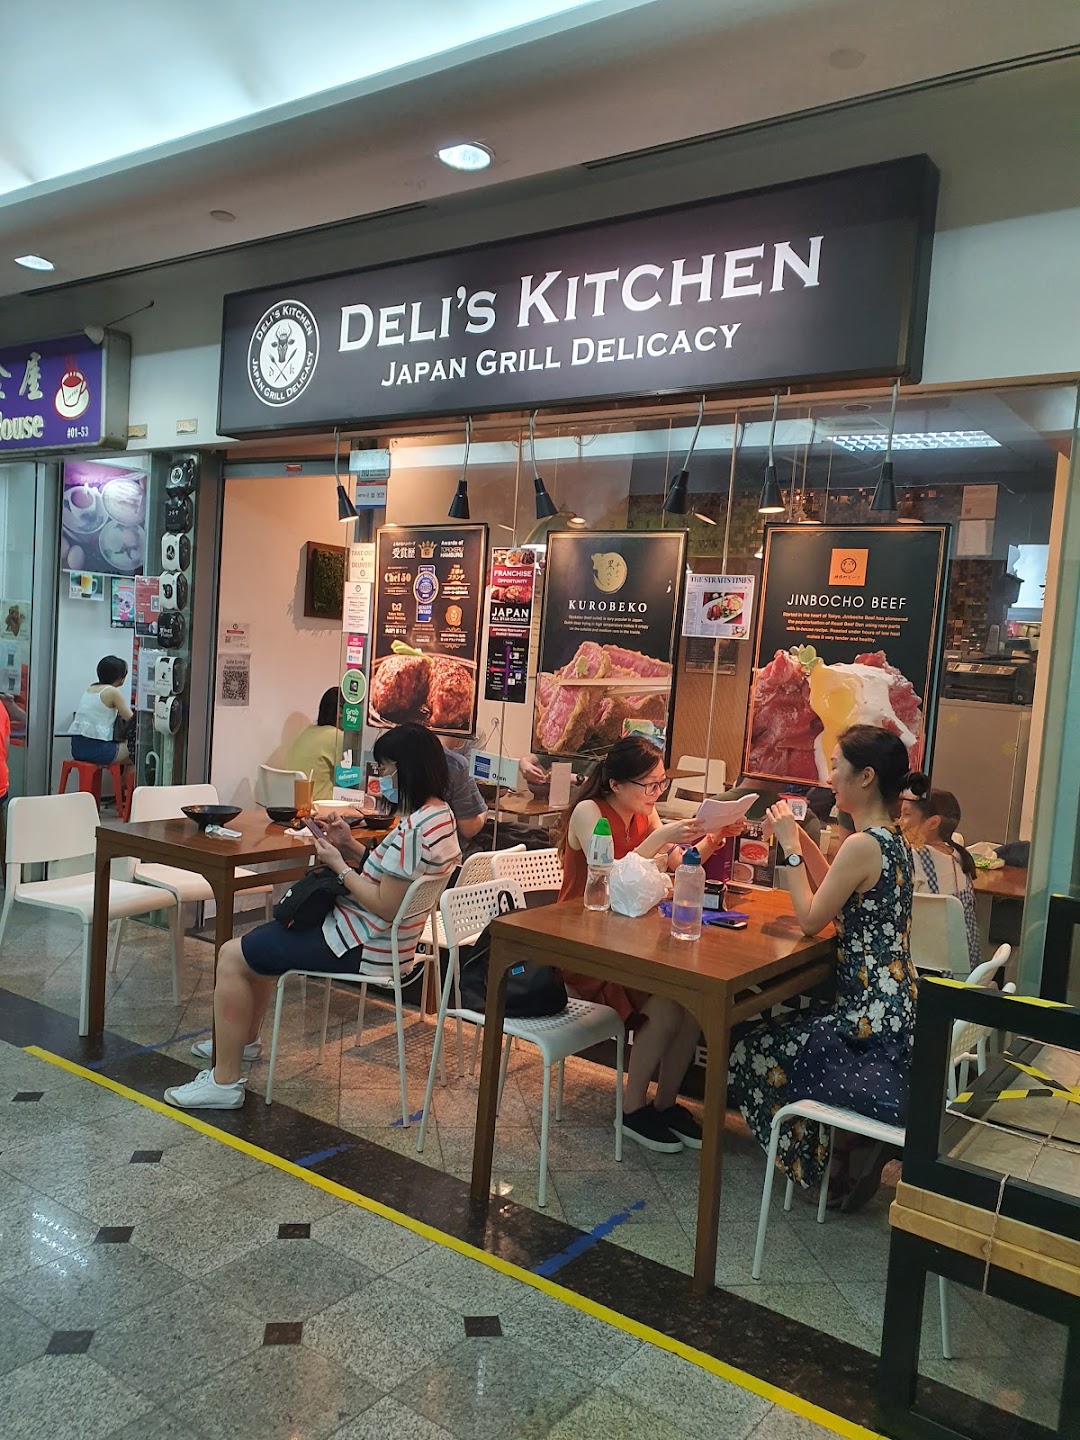 Deli’s Kitchen - Japan Grill Delicacy